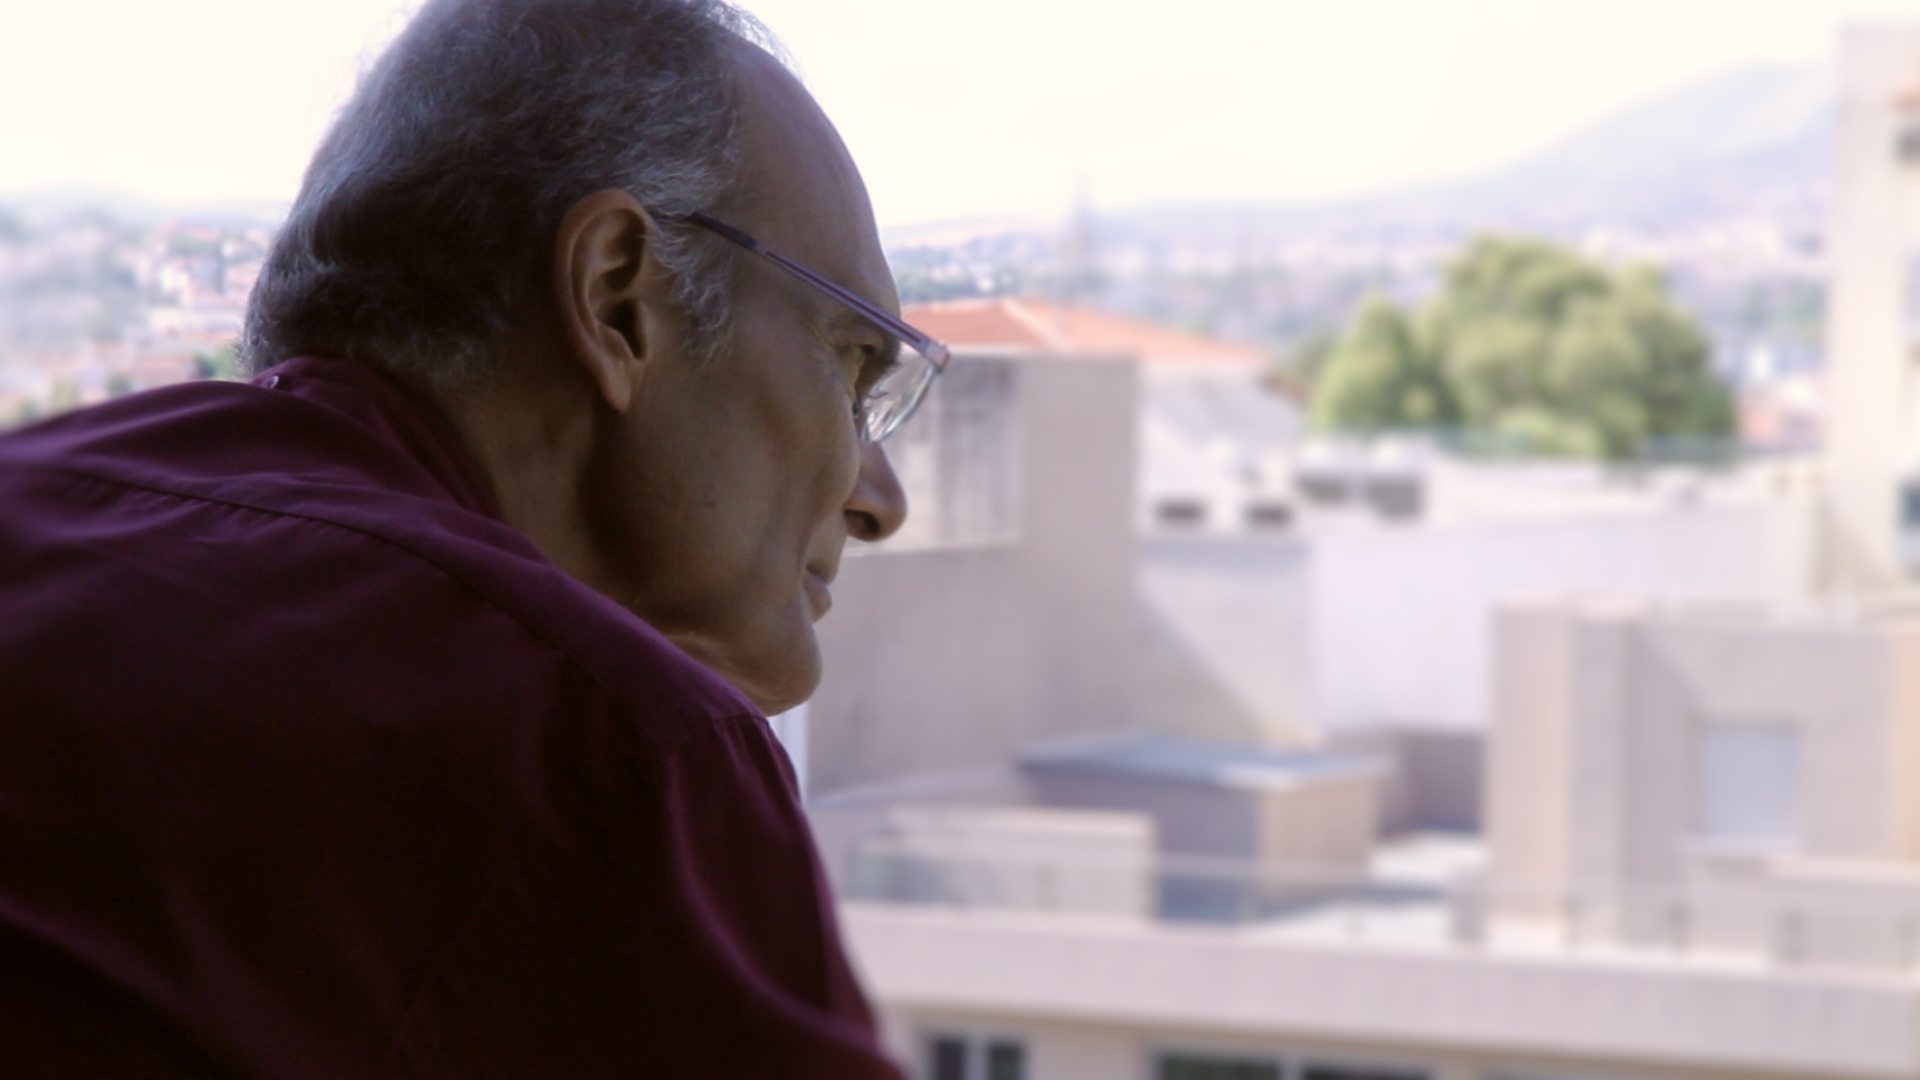 ΕΡΤ2 – Άνθρωποι και ιστορίες: «Αλέξανδρος Βέλιος: Η τελευταία απόφαση»